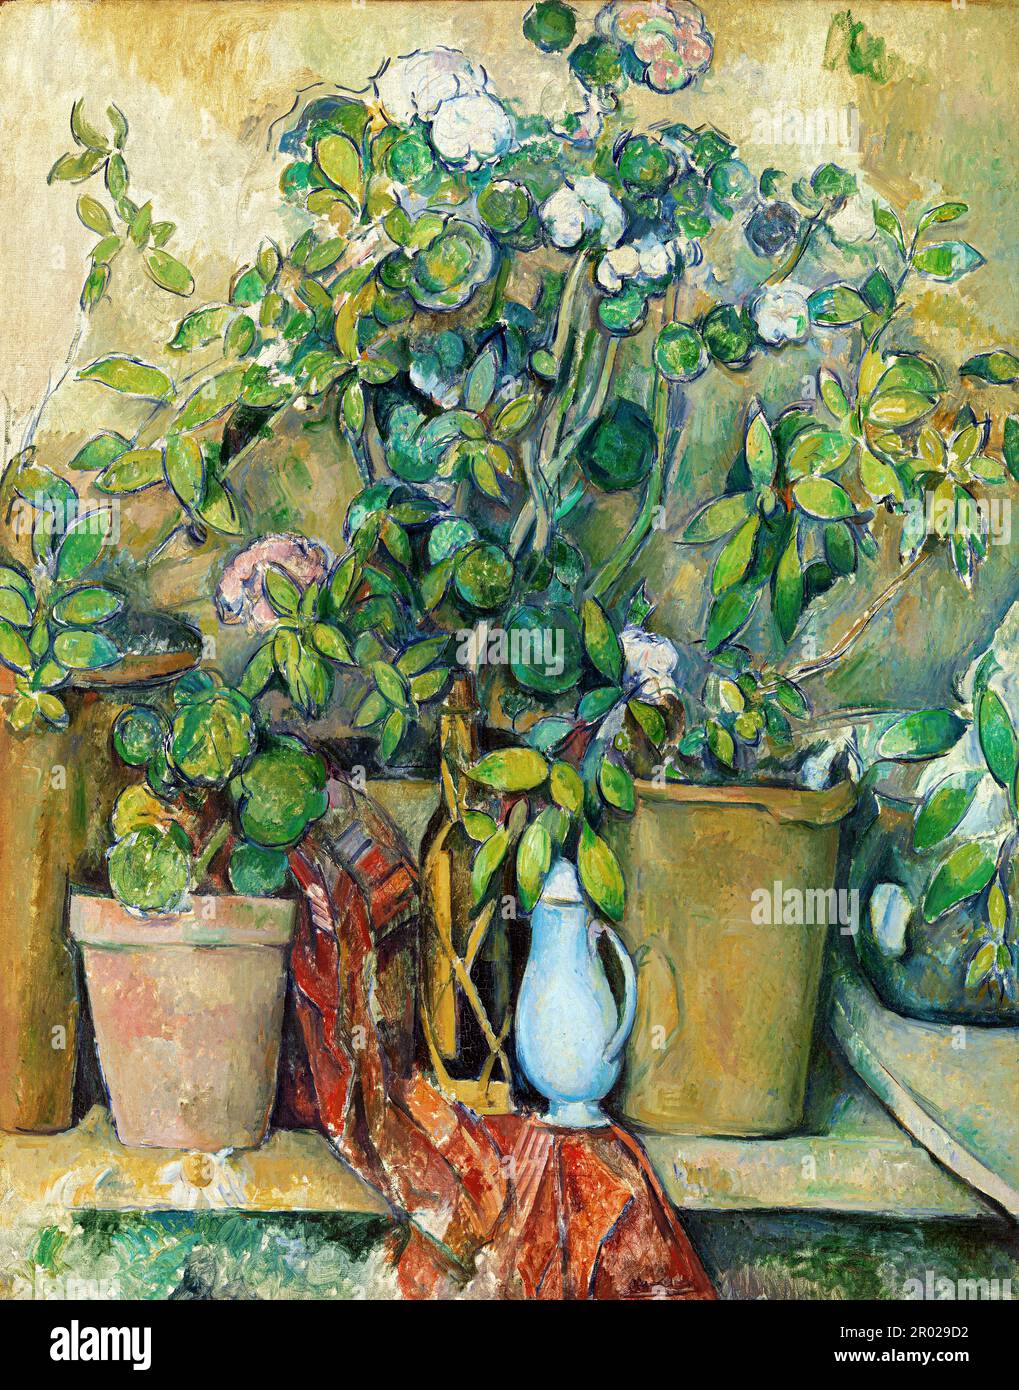 Terracotta Pots and Flowers (Pots en terre cuite et fleurs) by Paul Cezanne Stock Photo